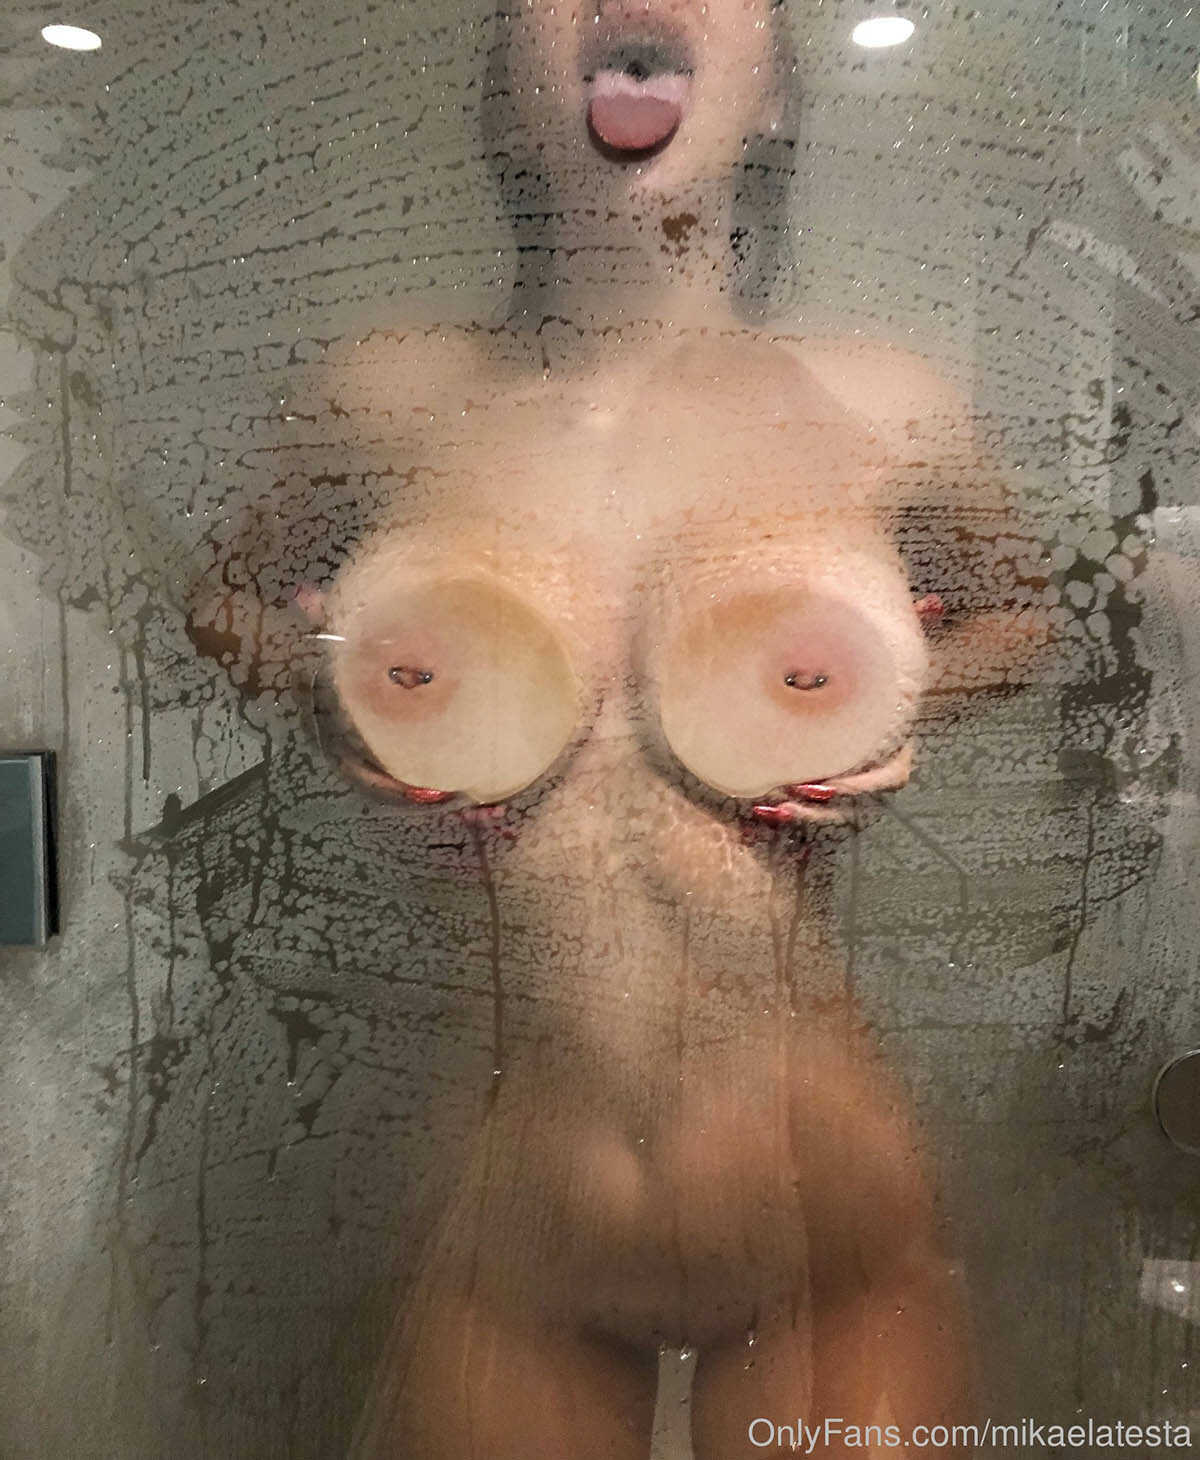 Γυμνές φωτογραφίες της μουνάρας Mikaela Testa